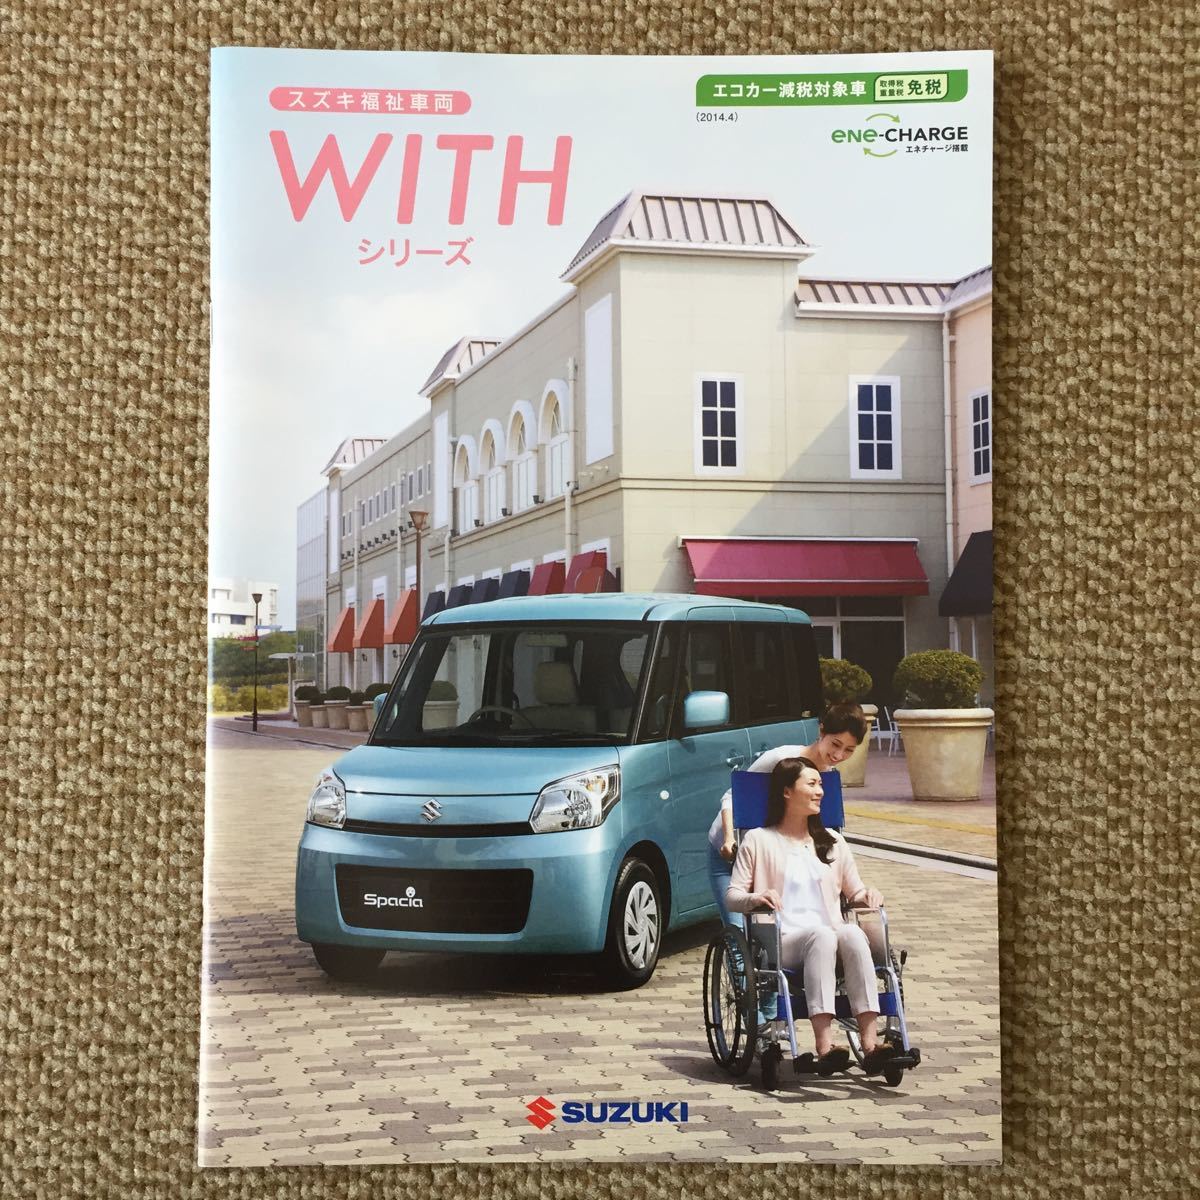 スズキ福祉車両WITHシリーズカタログ2014年4月の画像1